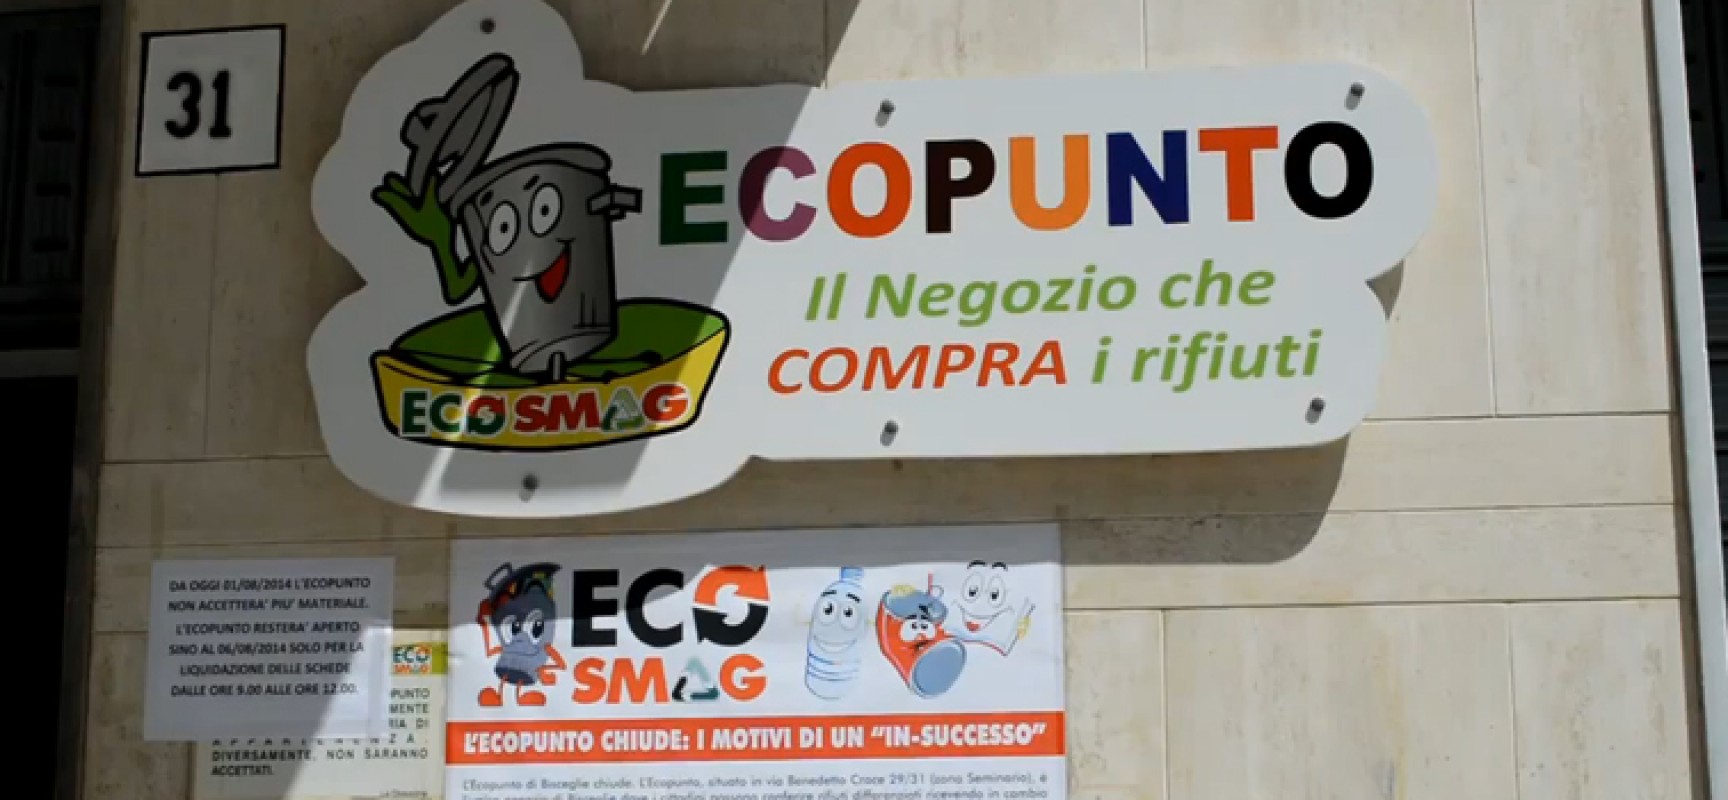 Sel sulla chiusura dell’Ecopunto: “Esercizio virtuoso condannato dall’amministrazione comunale”